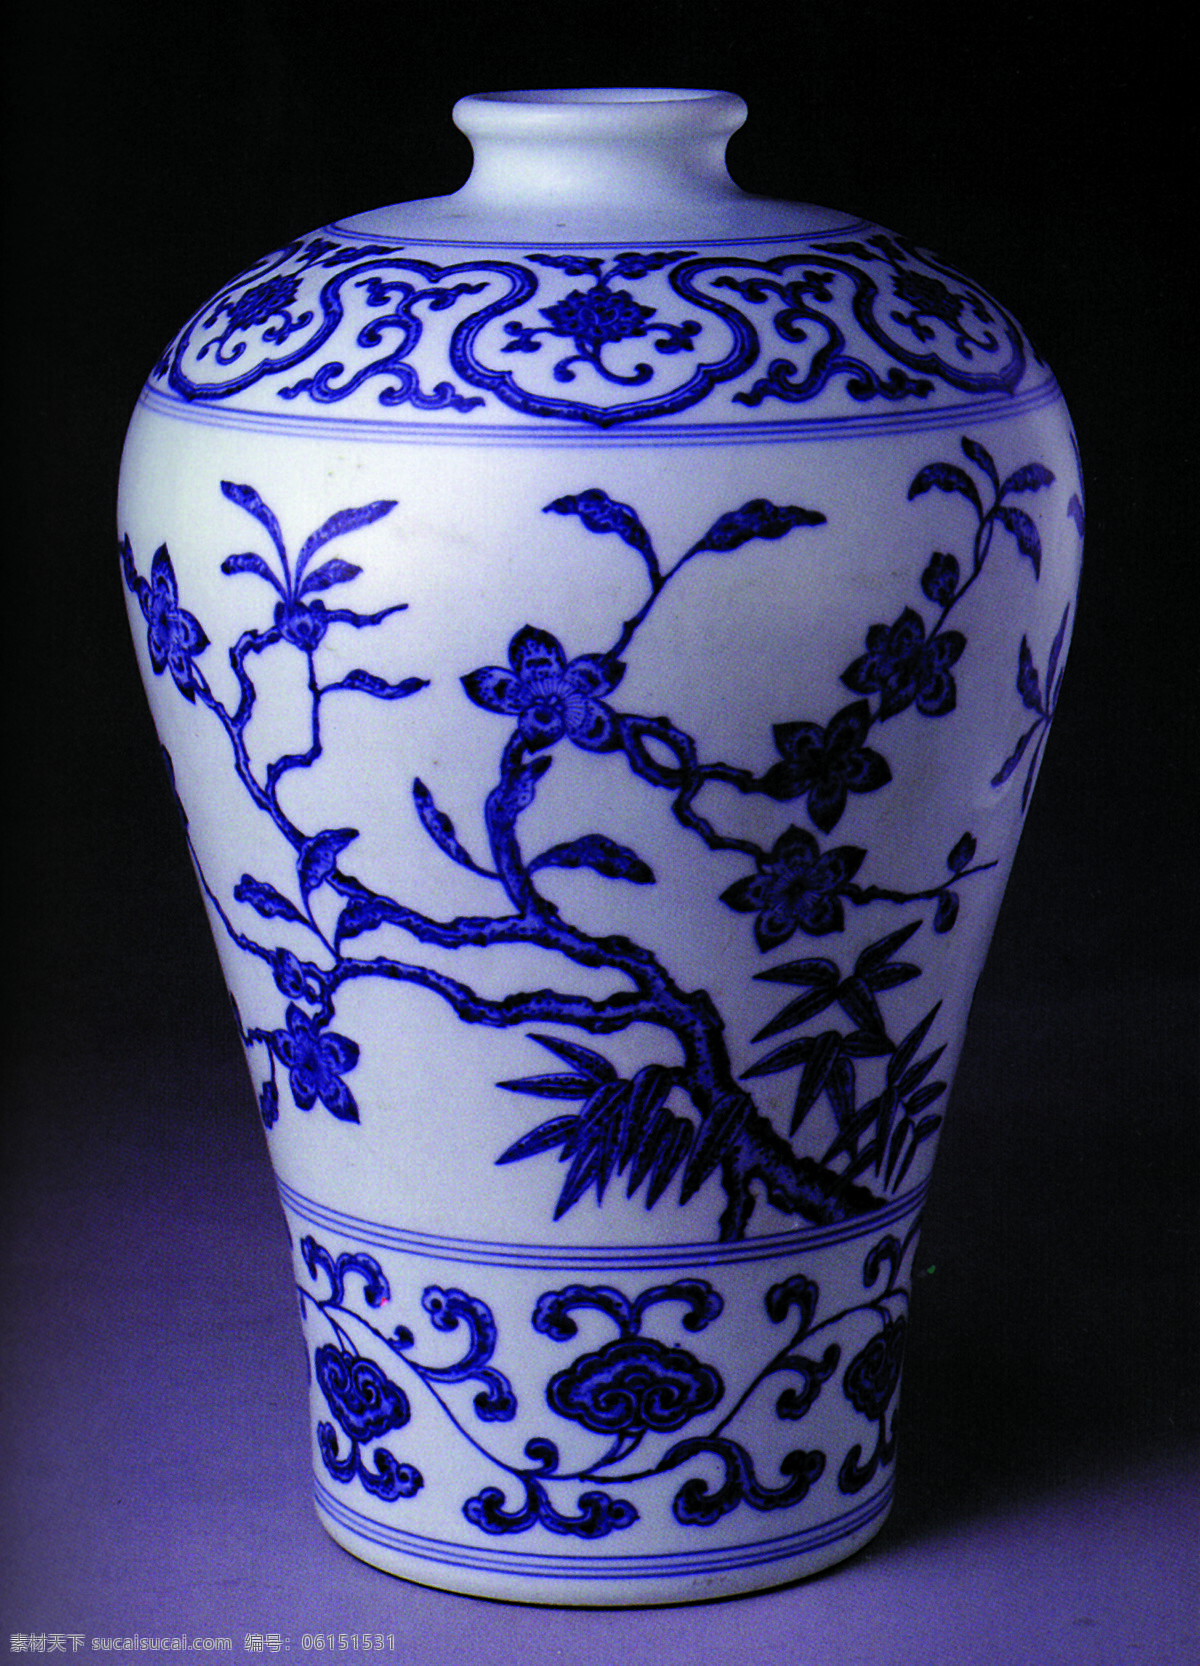 瓷器图片 传统 中国元素 青花瓷 瓷器 工艺品 花瓶 中国 古典 艺术 篇 文化艺术 传统文化